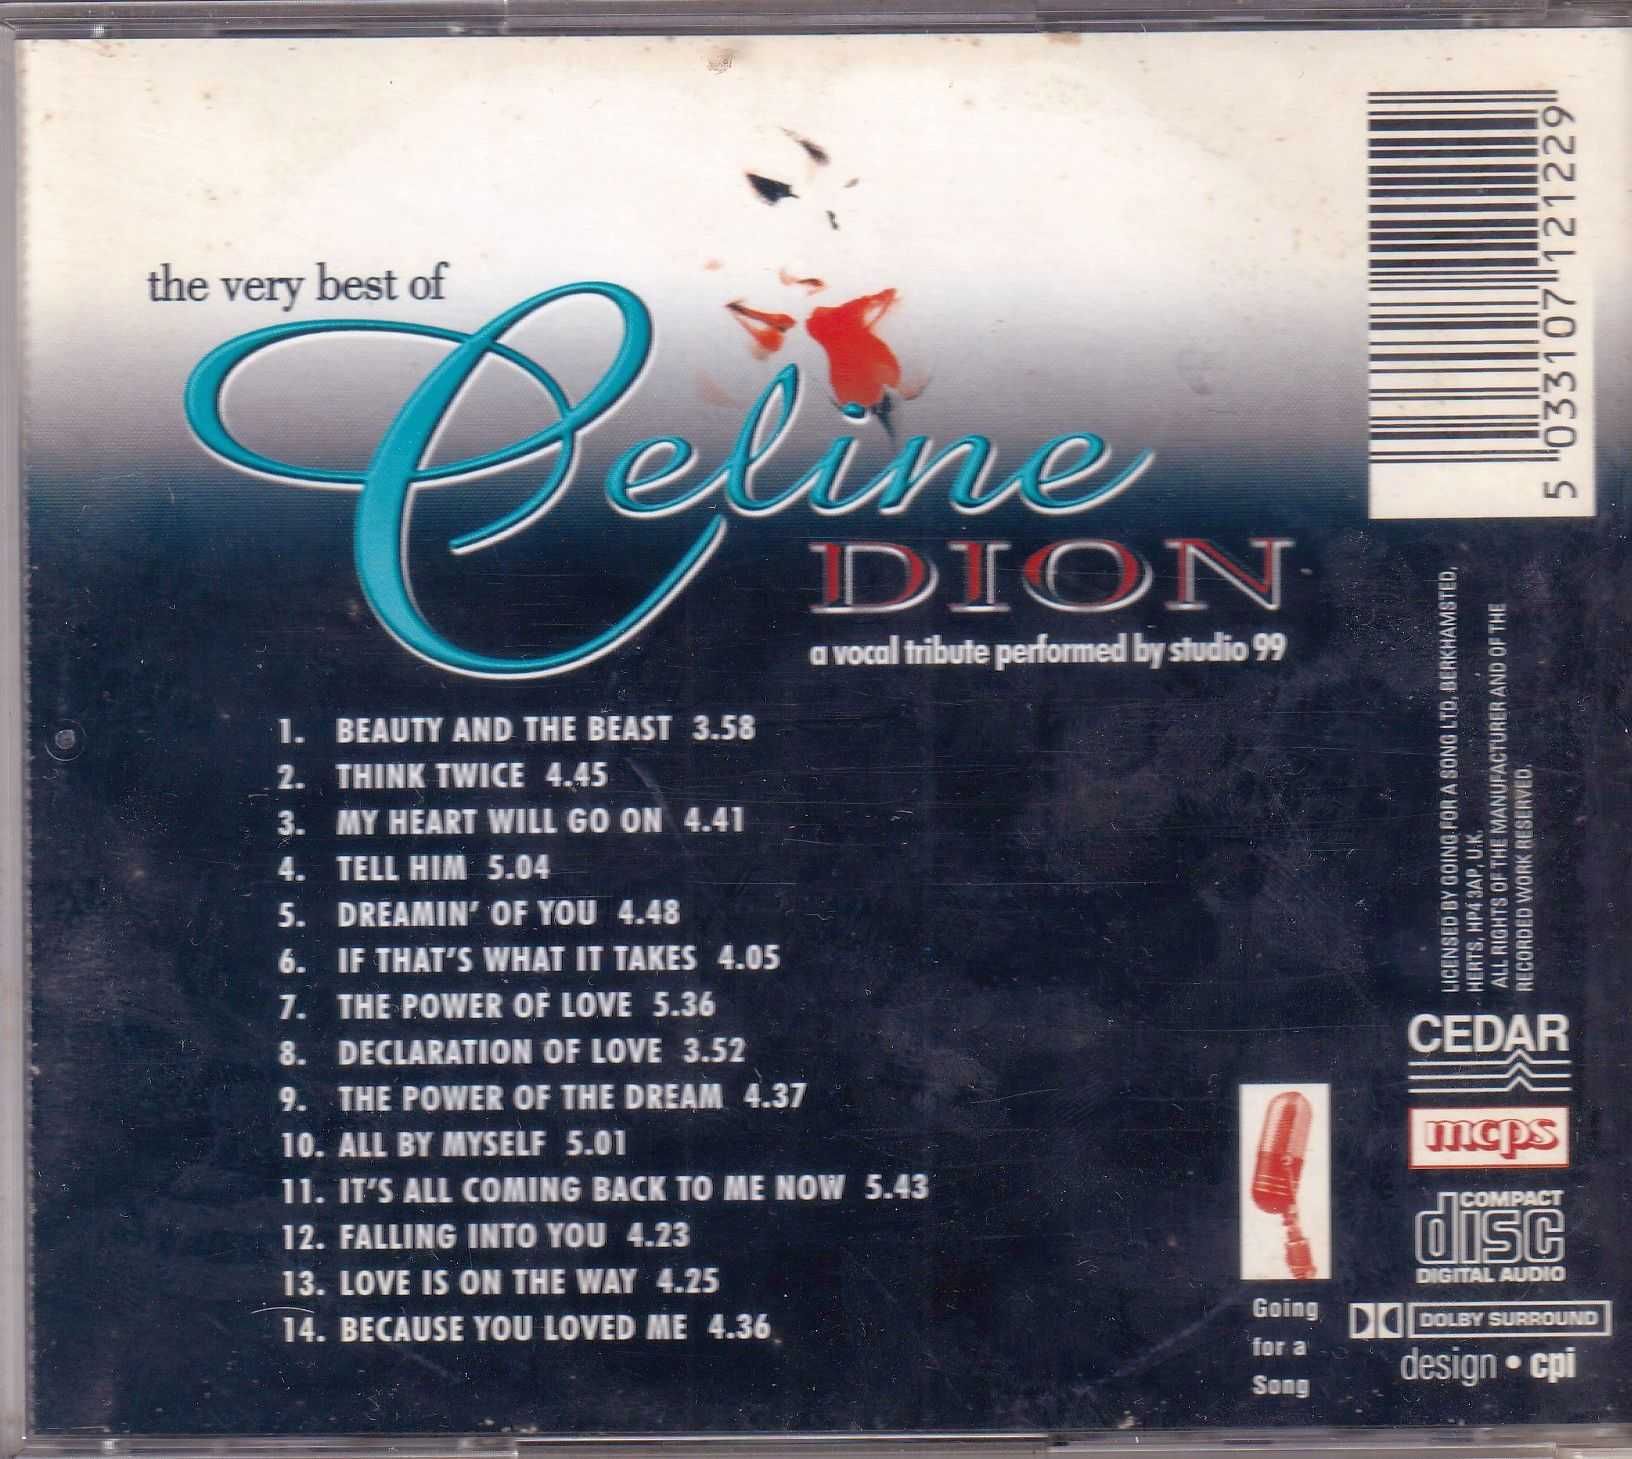 CD - Celine Dion